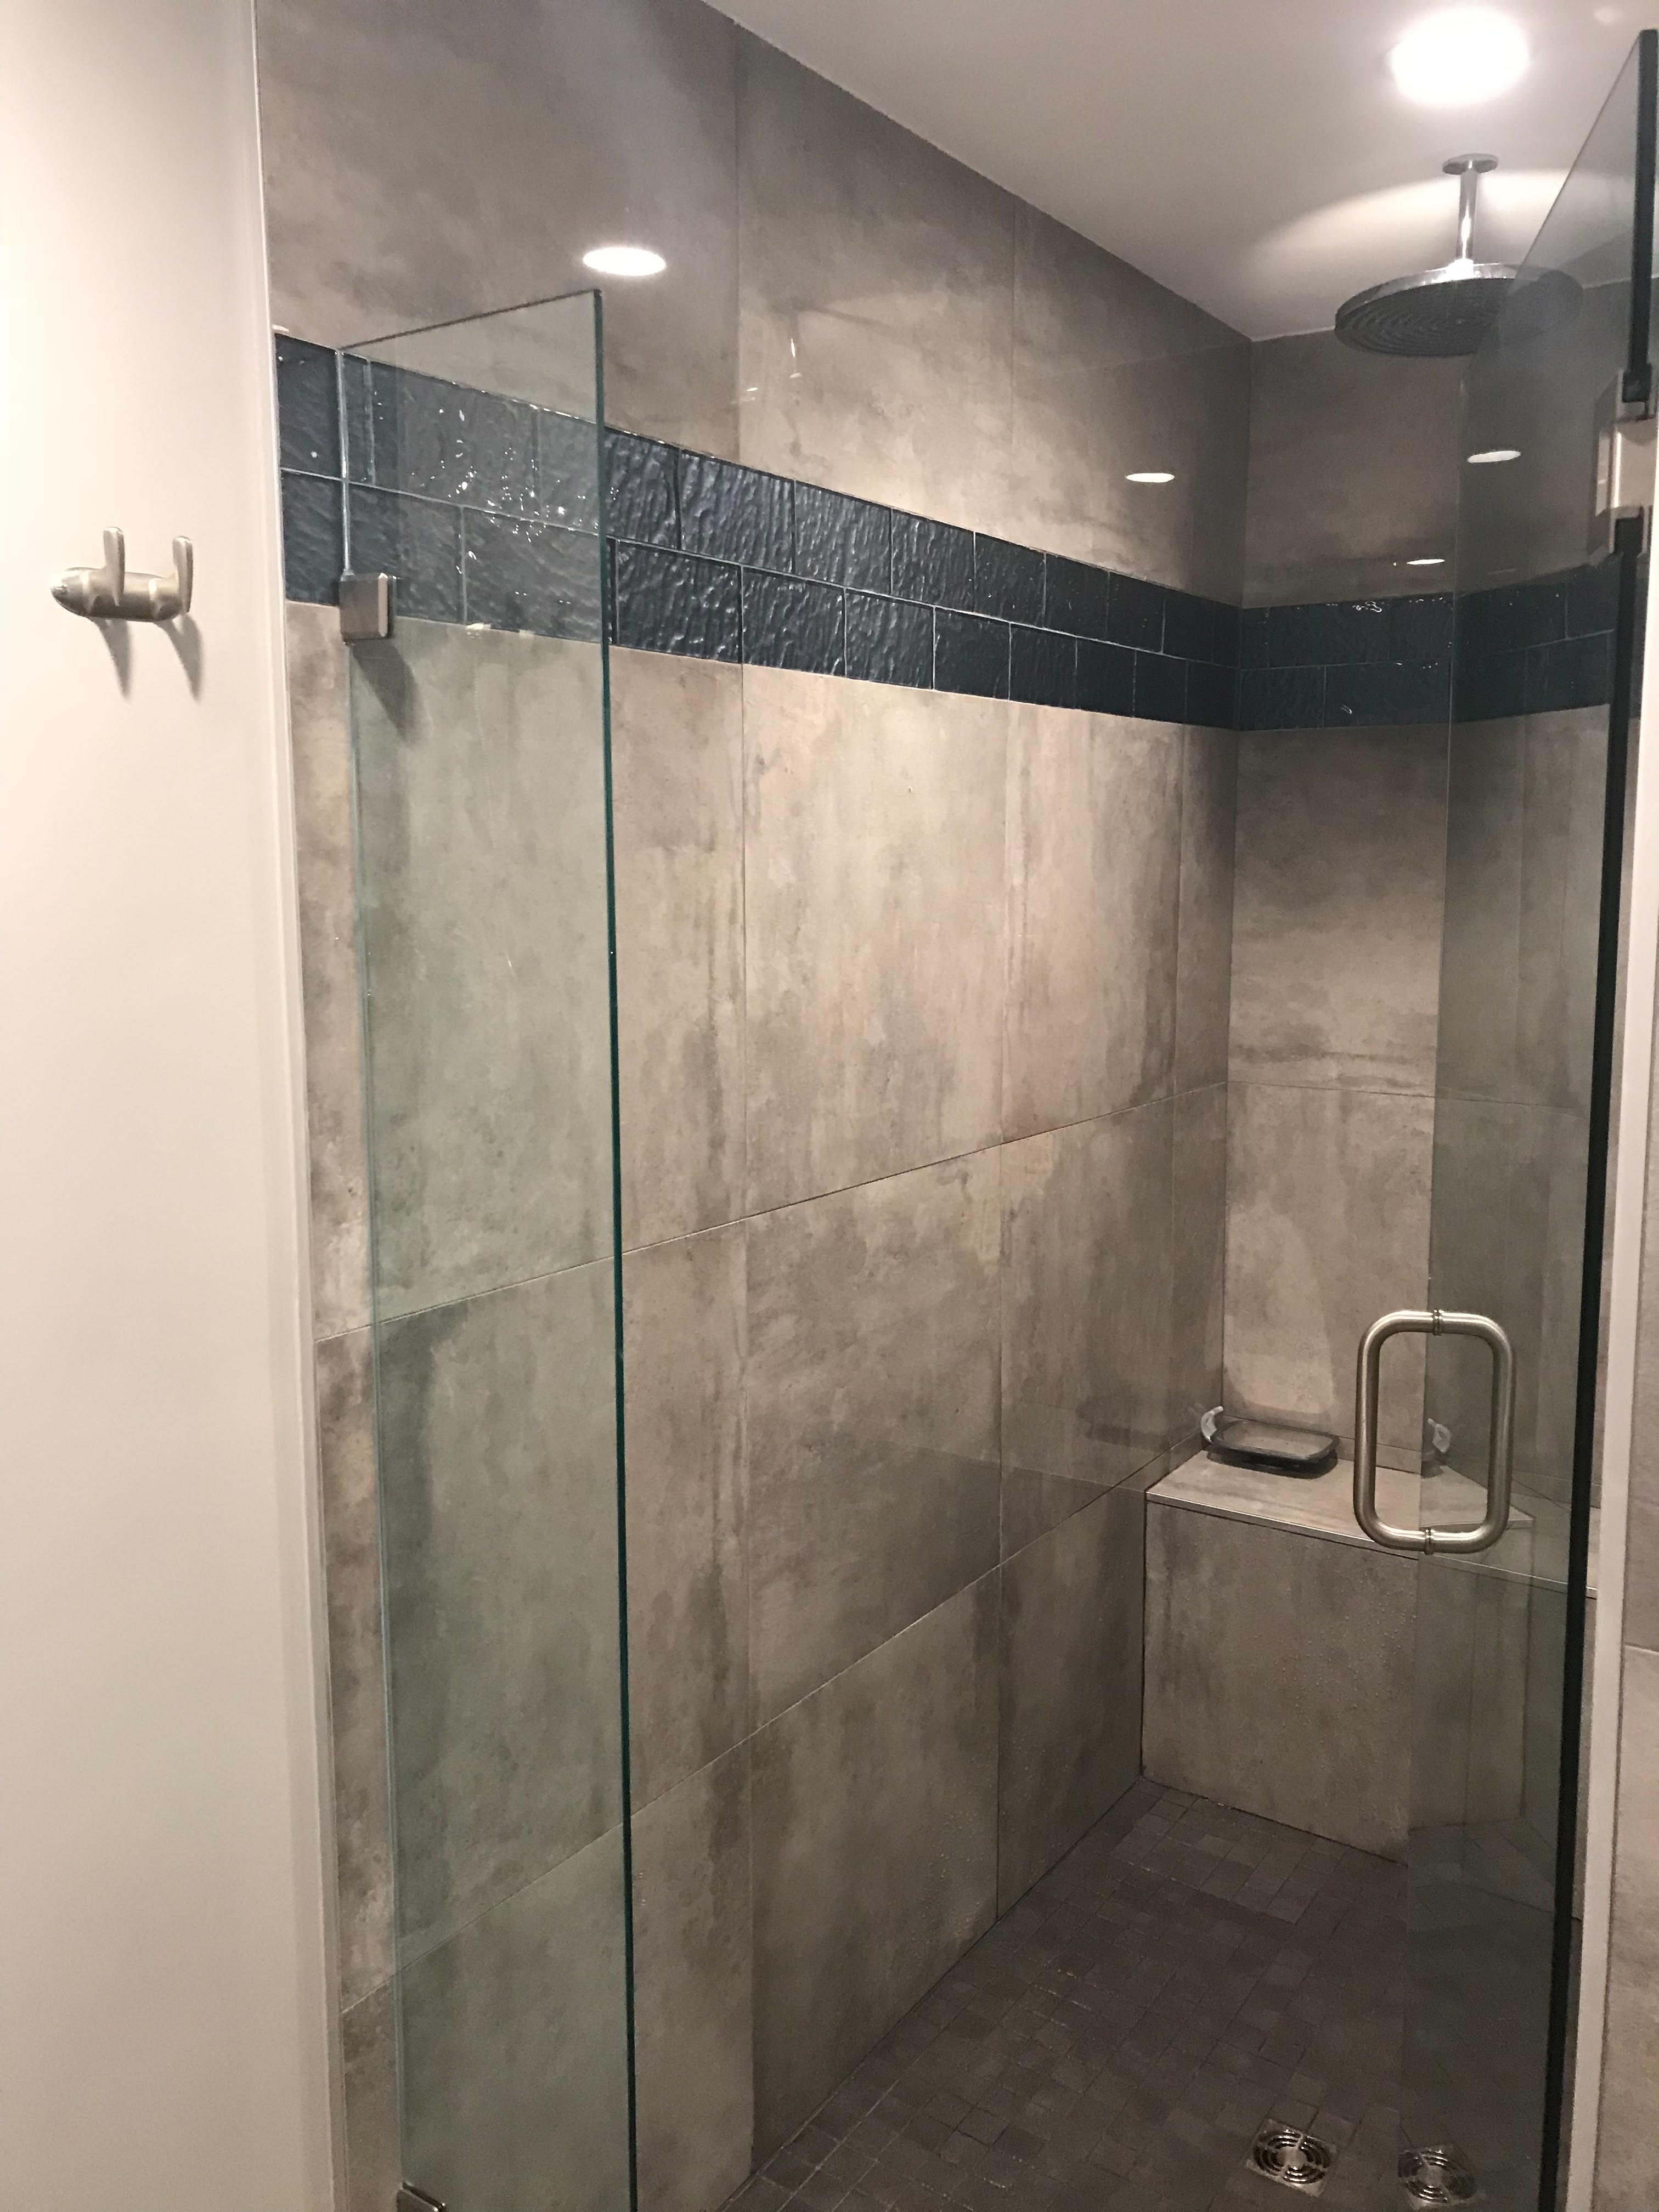 Shower with glass door opening